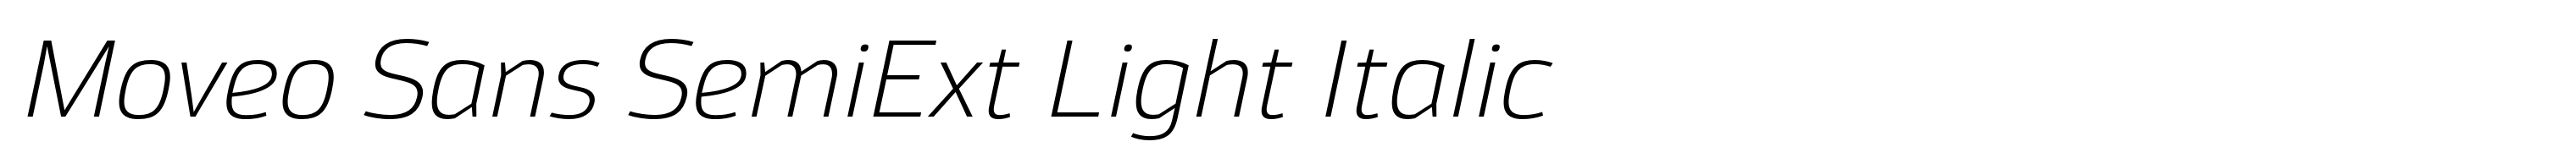 Moveo Sans SemiExt Light Italic